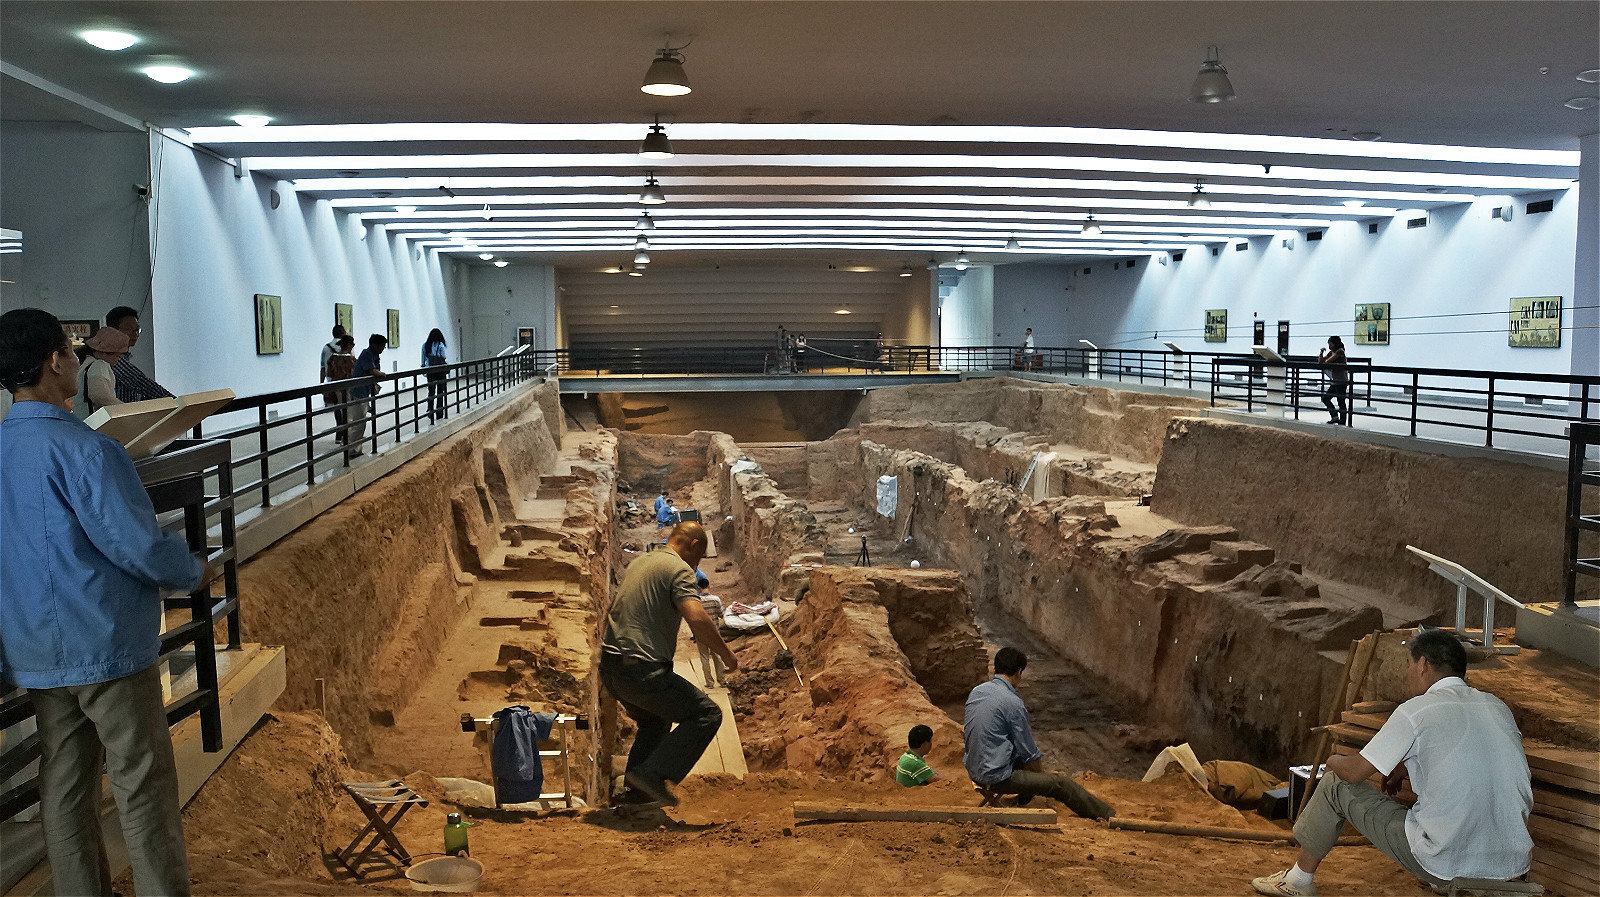 k9901墓:意思1999年发现的第一个墓 秦始皇陵